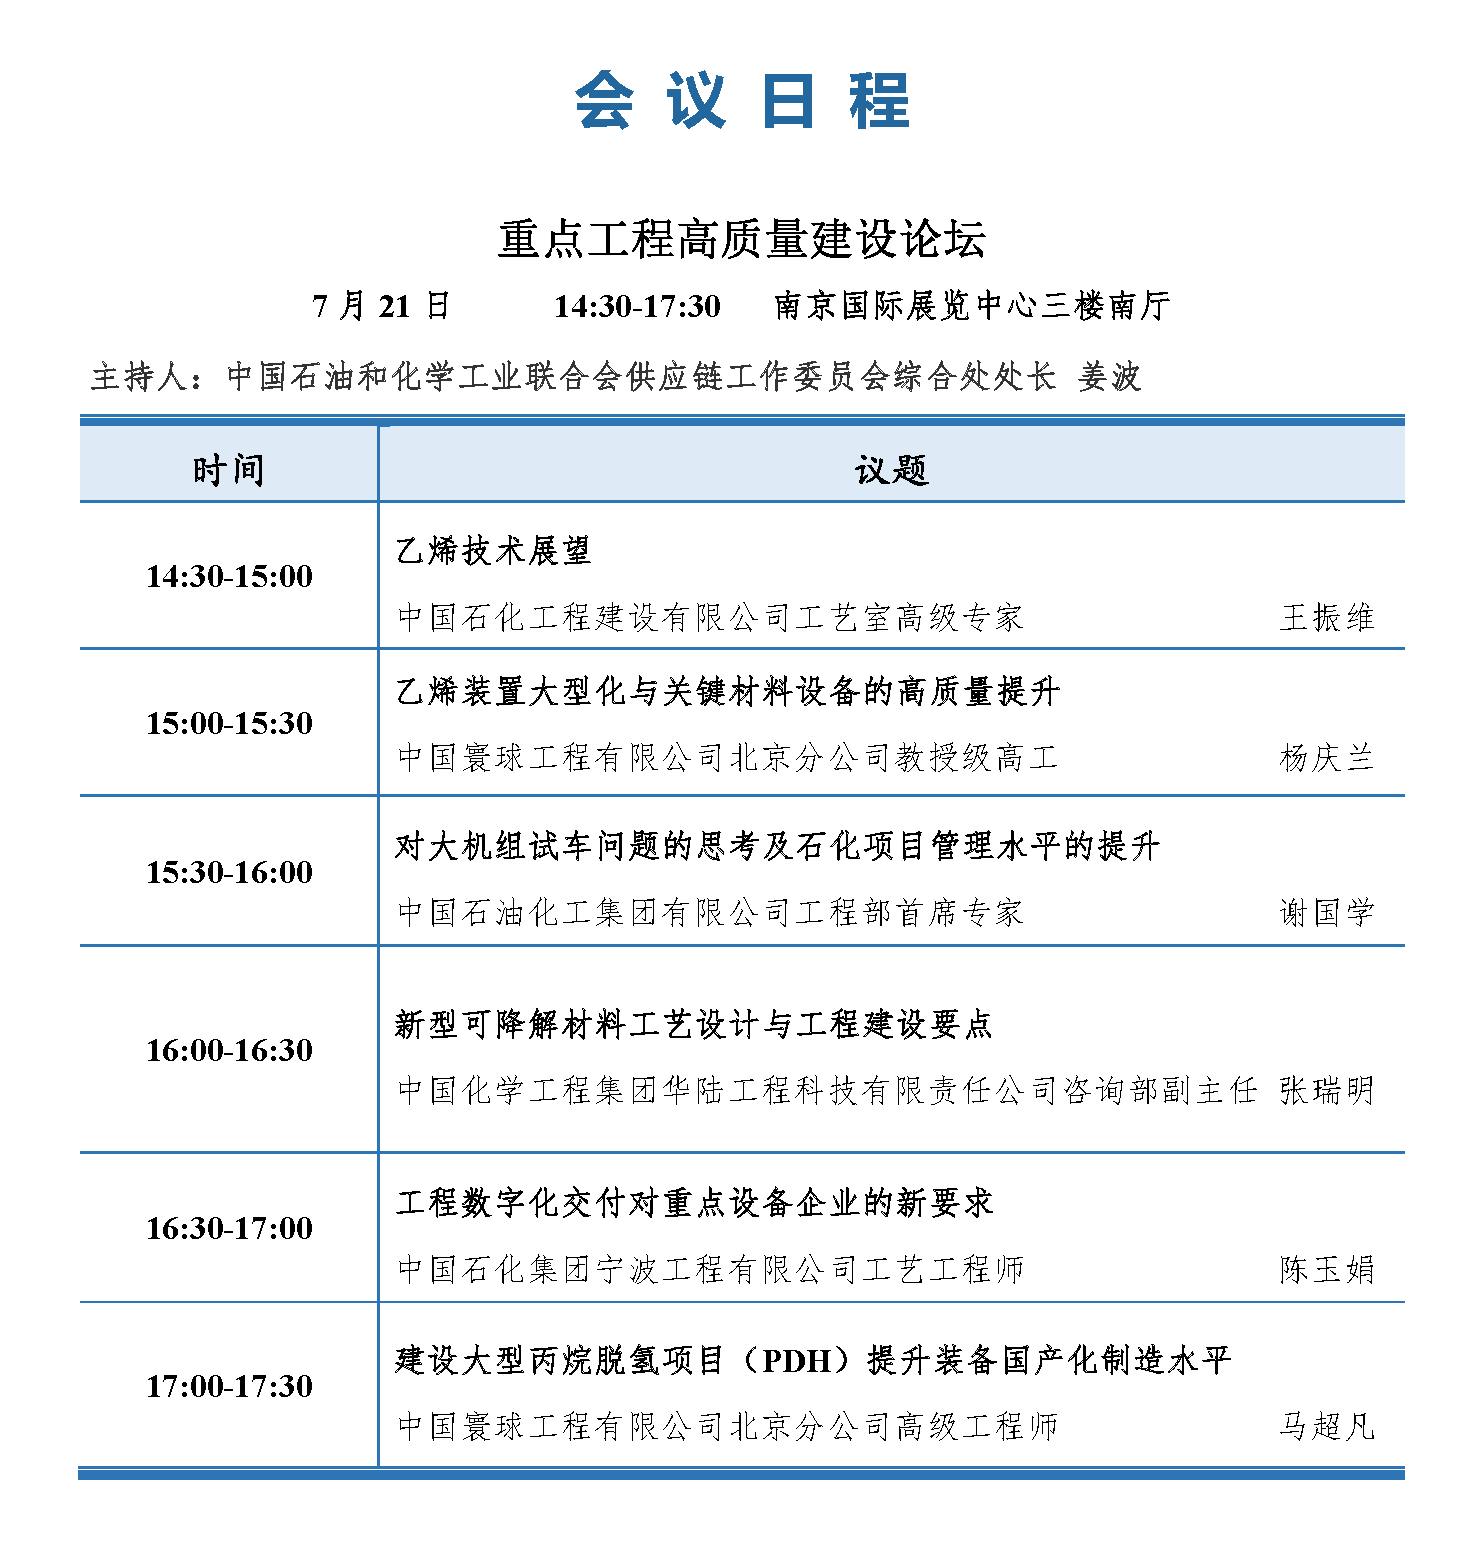 会议手册-2021中国石化行业采购大会_页面_11.png